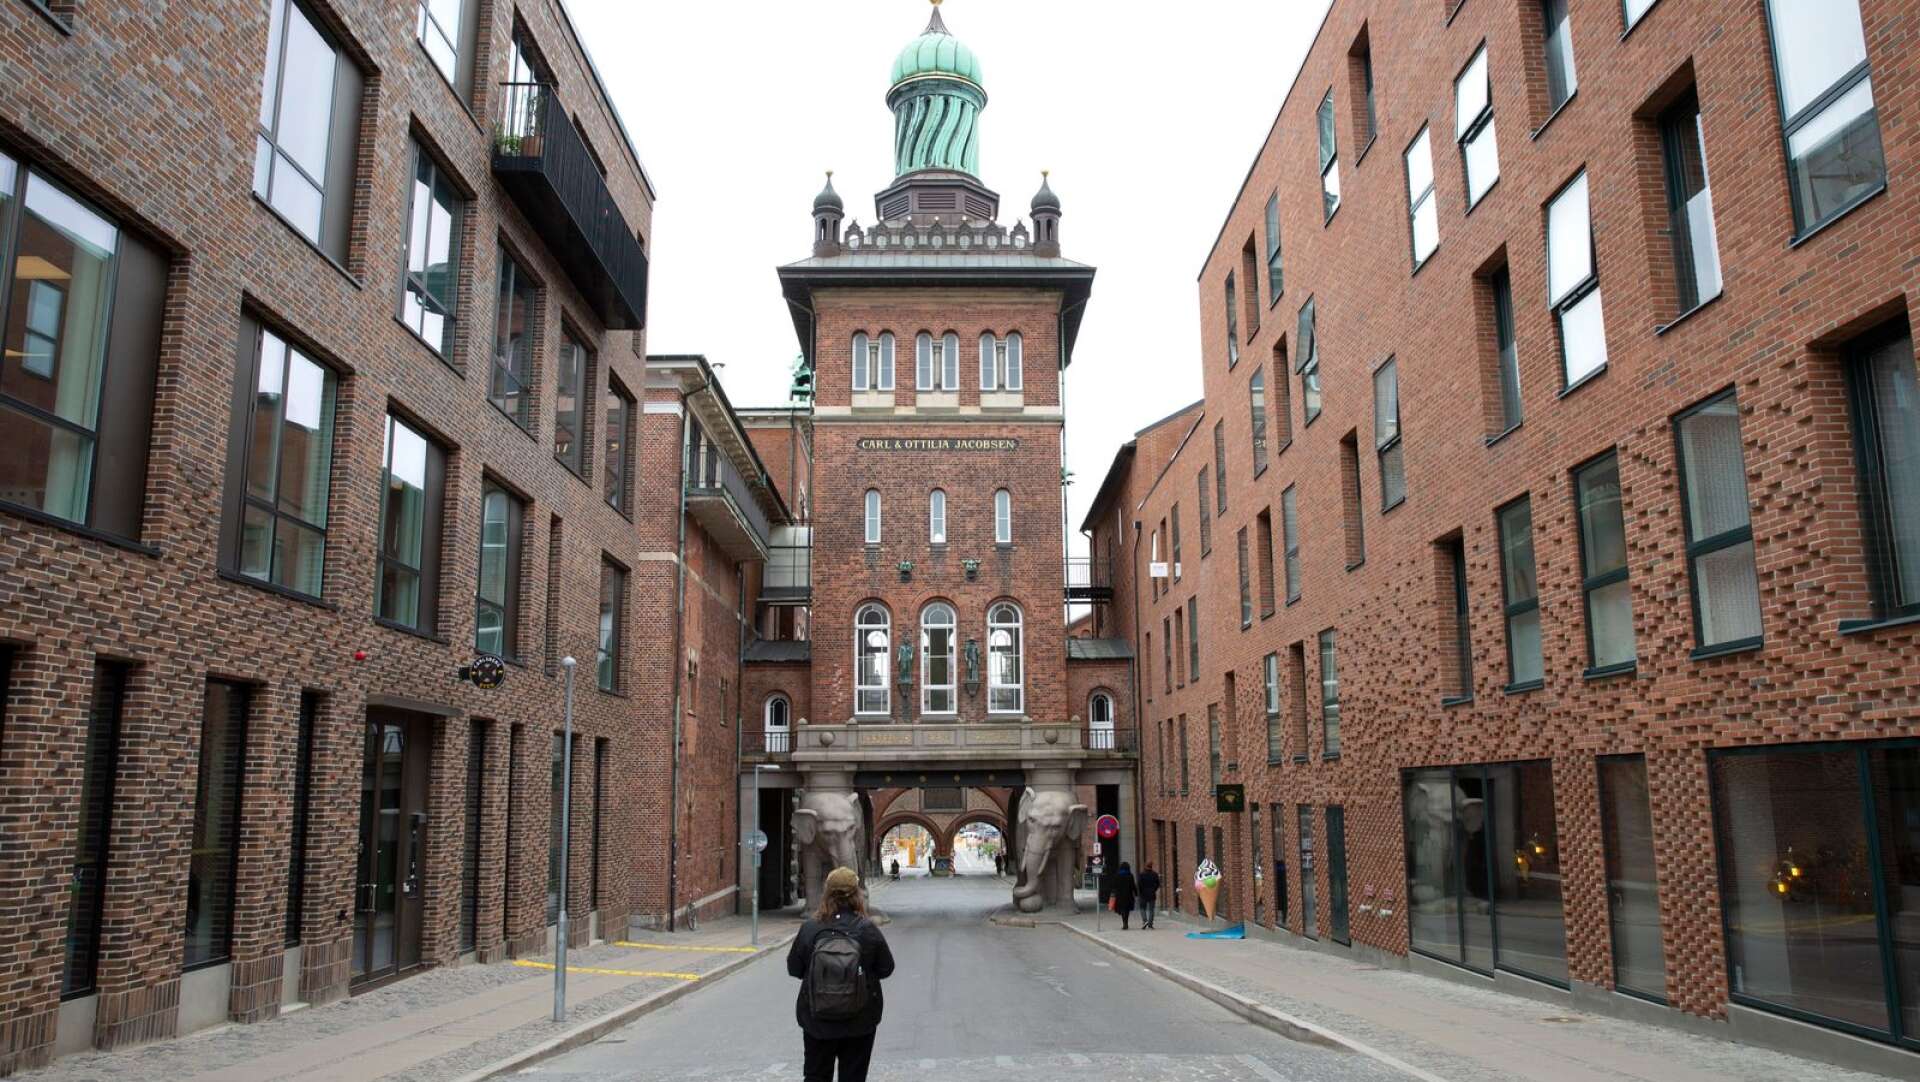 Carlsberg Byen är en stadsdel i förvandling. Här smälter historiska före detta bryggeribyggnader samman med moderna nybyggen.